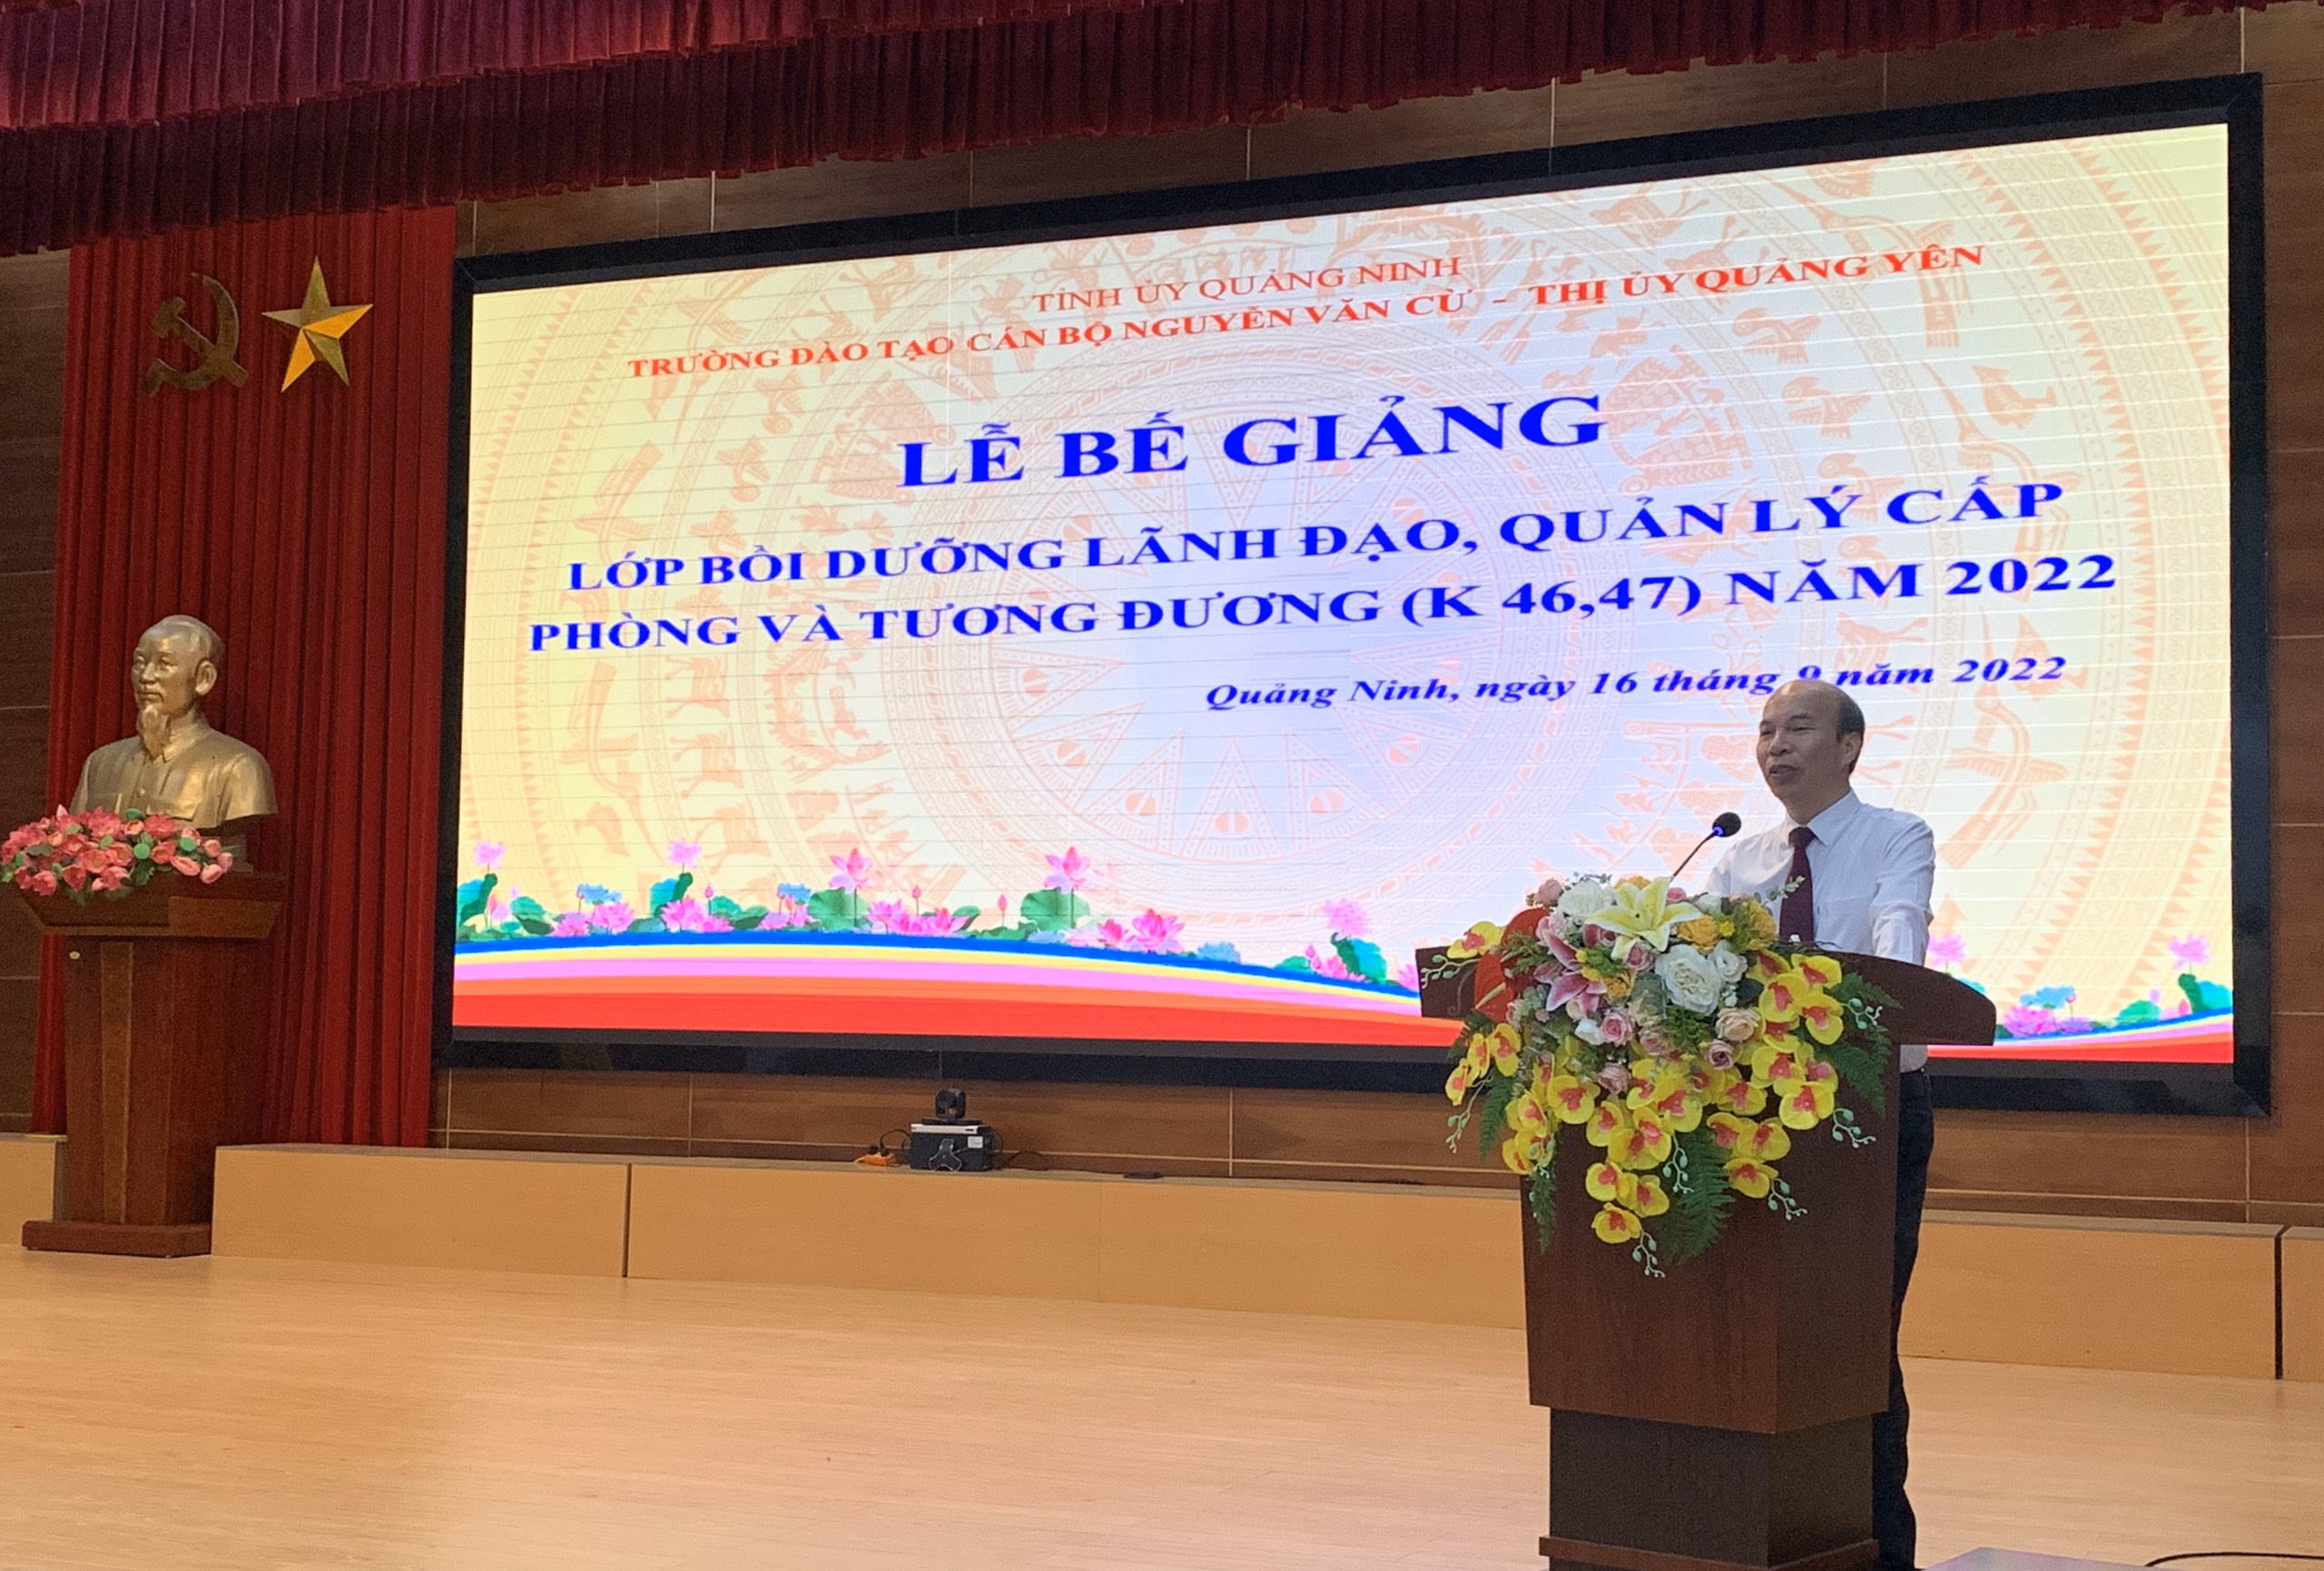 Bế giảng hai lớp bồi dưỡng lãnh đạo quản lý cấp phòng và tương đương năm 2022 (K46-K47) tại Trường Đào tạo cán bộ Nguyễn Văn Cừ